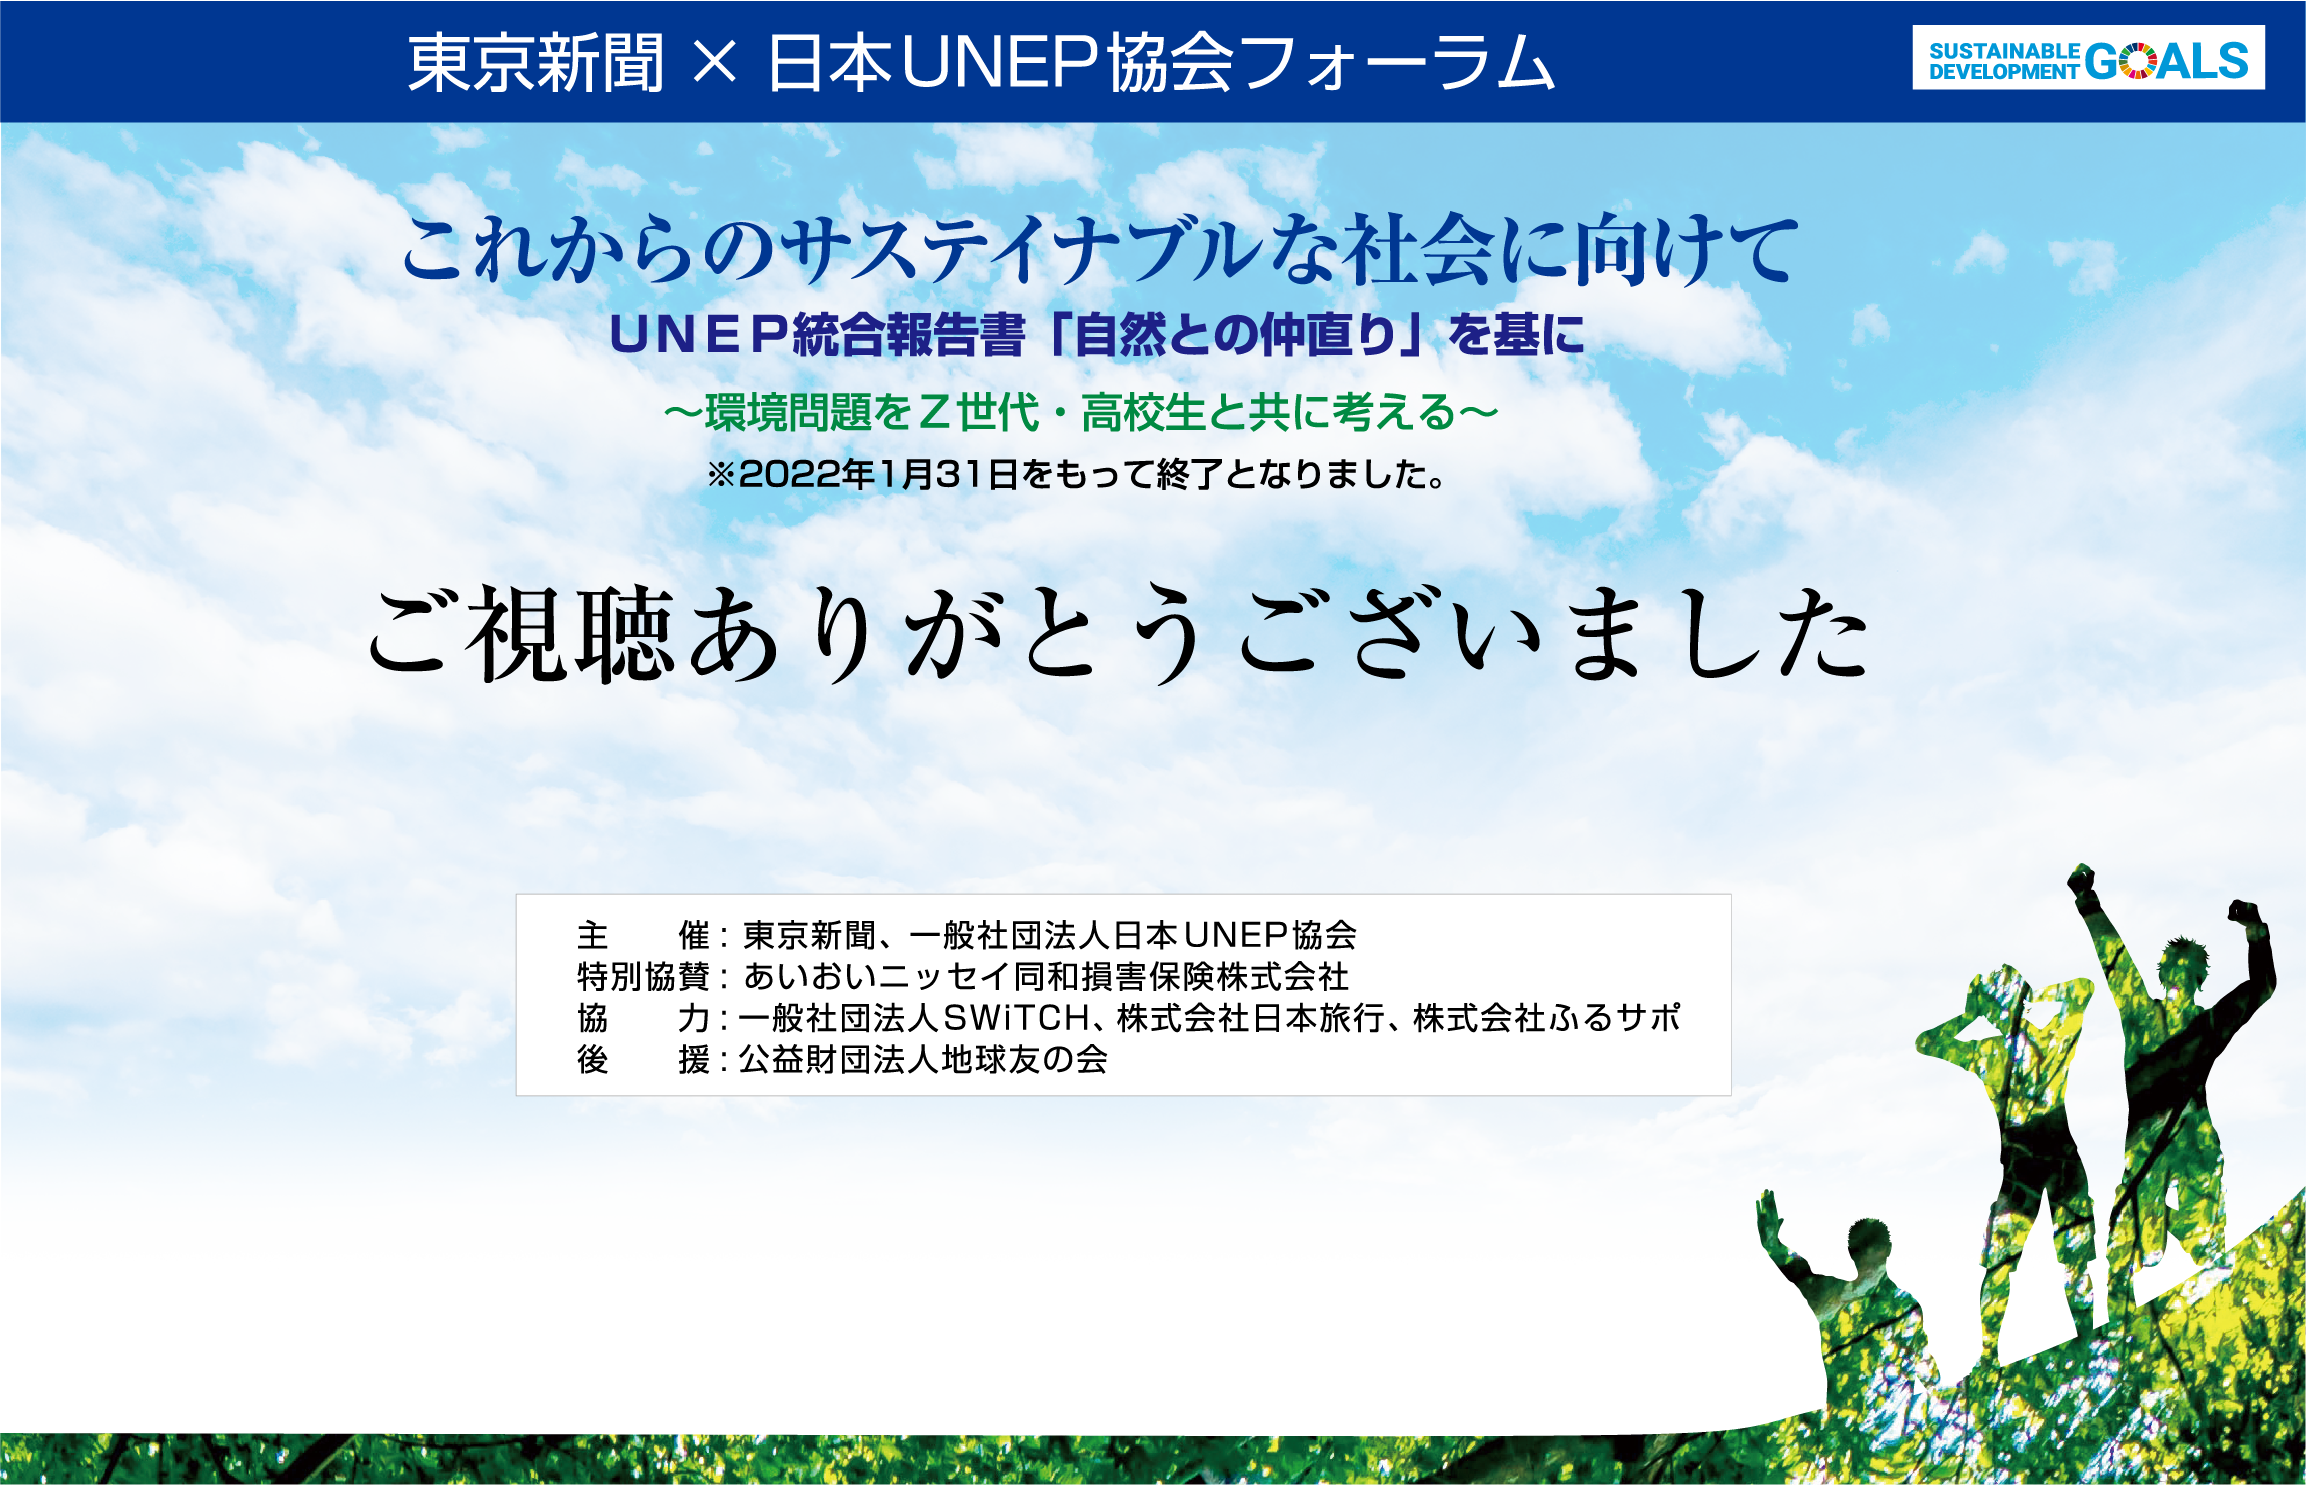 東京新聞 × 日本UNEP協会フォーラム
    これからのサステイナブルな社会に向けて
    ＵＮＥＰ統合報告書「自然との仲直り」を基に～環境問題をＺ世代・高校生と共に考える～
    視聴開始は12月10日（金）14時より
    ※期間中は何度でも、ご視聴いただけます。
    ※2022年1月31日(月)まで視聴可能。
    
    主催：東京新聞、 一般社団法人日本UNEP協会
    特別協賛：あいおいニッセイ同和損害保険株式会社
    協力：一般社団法人SWiTCH、 株式会社日本旅行、 株式会社ふるサポ
    後援：公益財団法人地球友の会